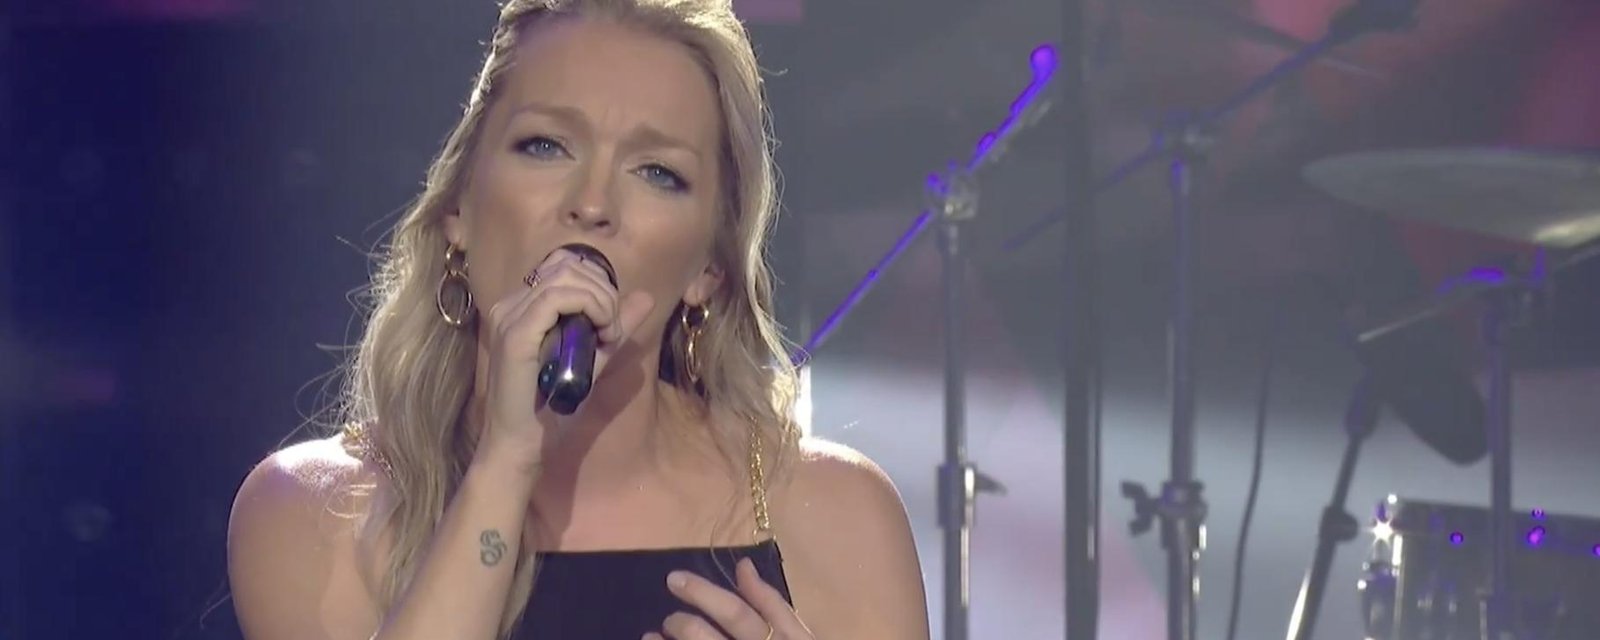 Suzie Villeneuve est la meilleure chanteuse parmi les 4 finalistes, mais elle ne gagnera pas La Voix